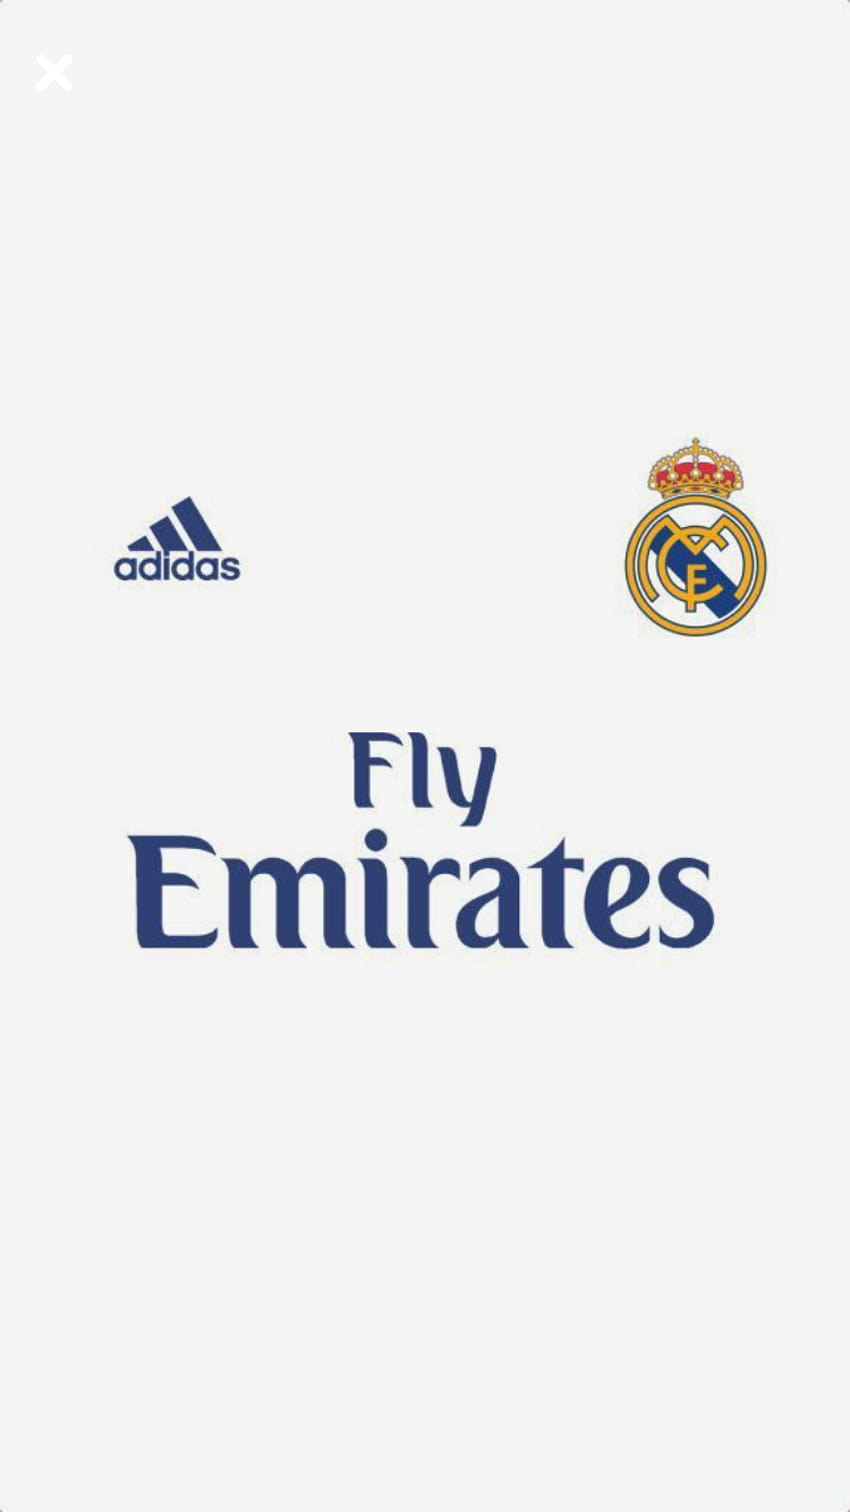 Juan Miguel Vera sobre el Real Madrid, logotipo de fly emirates fondo de pantalla del teléfono